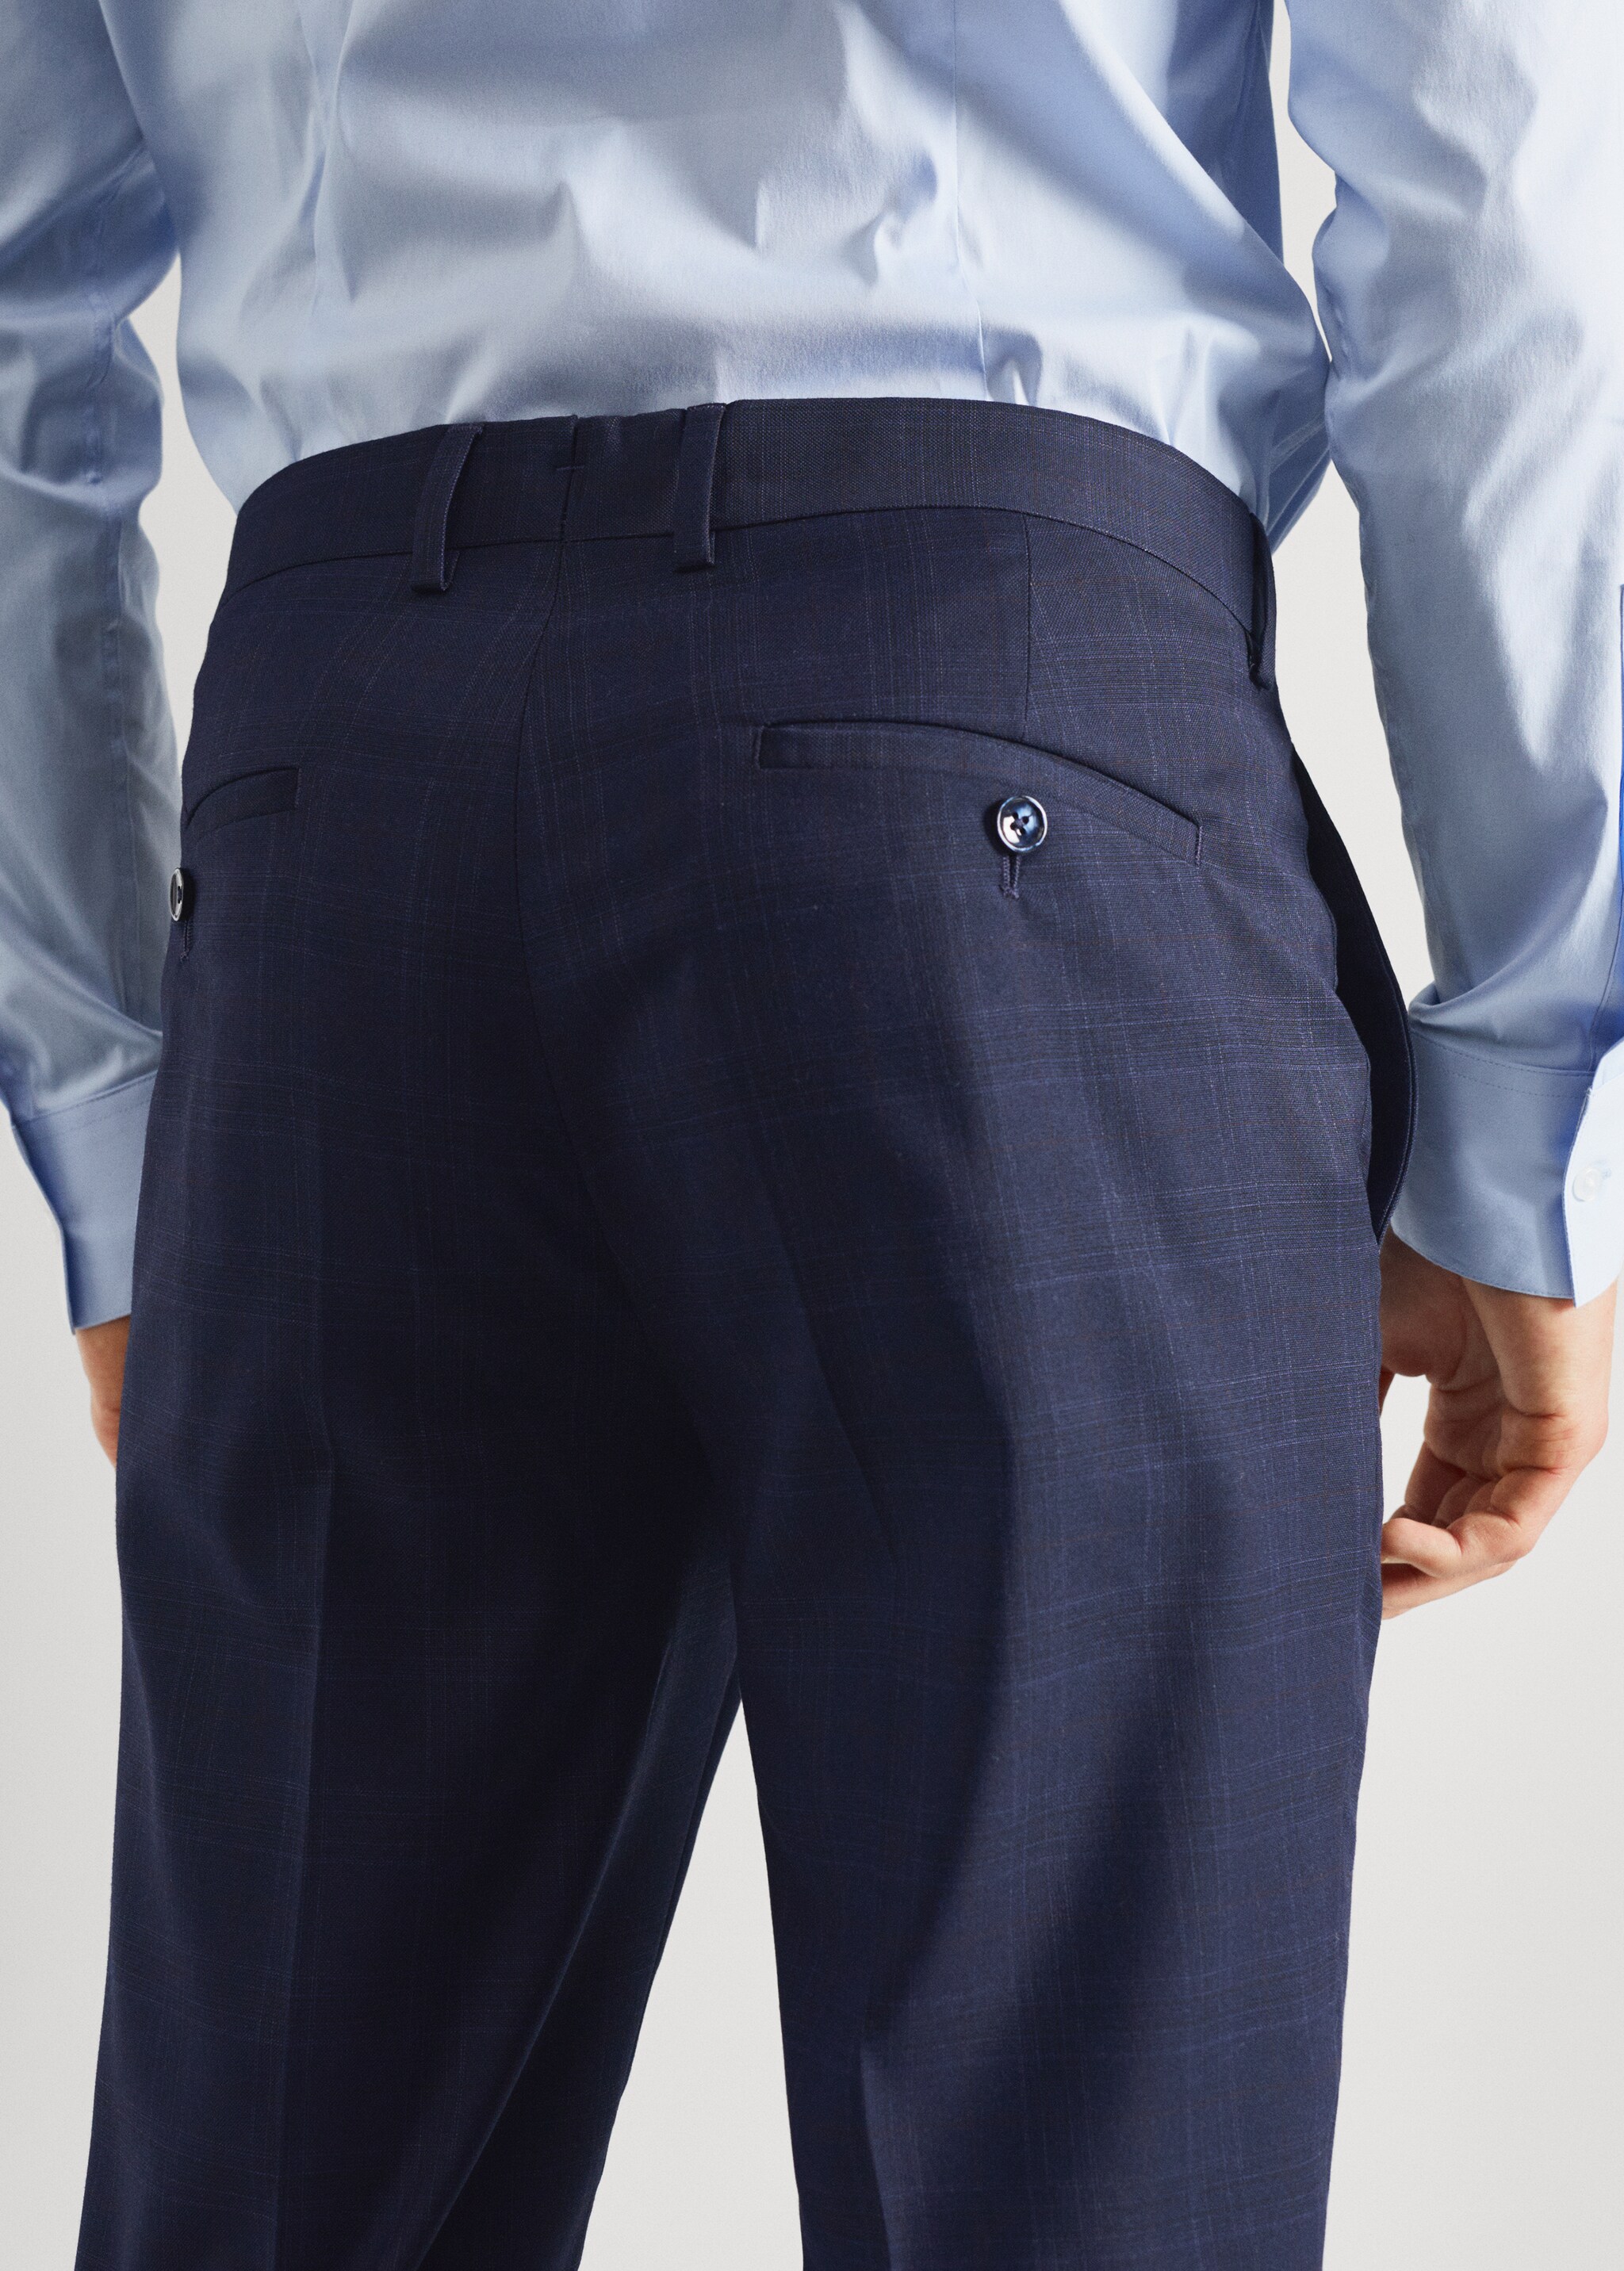 Pantalons vestir súper slim fit - Detall de l'article 6